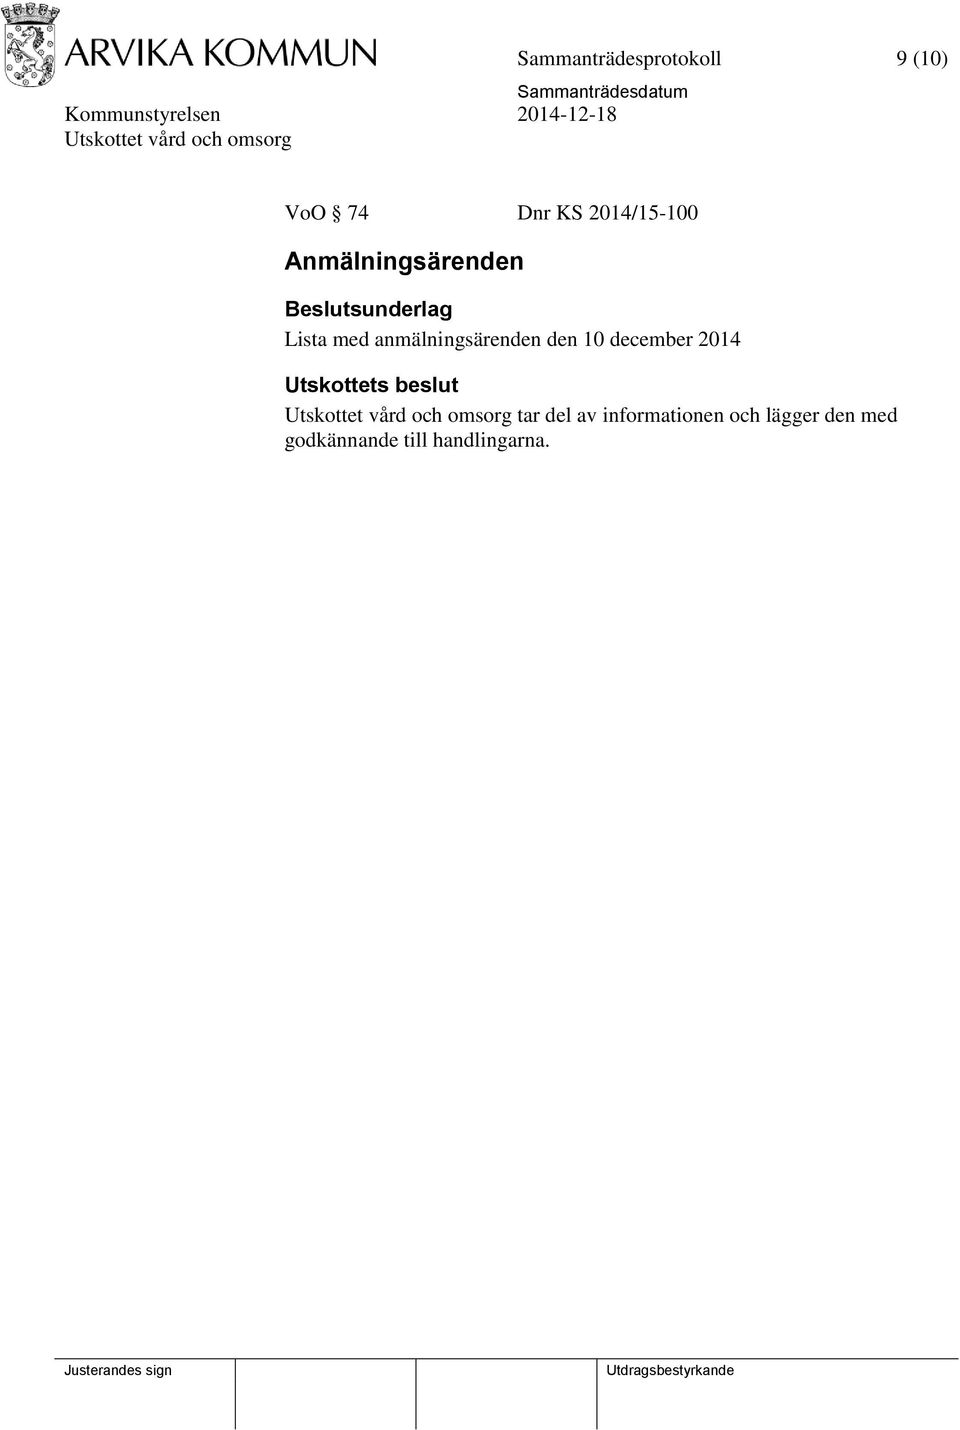 anmälningsärenden den 10 december 2014 tar del